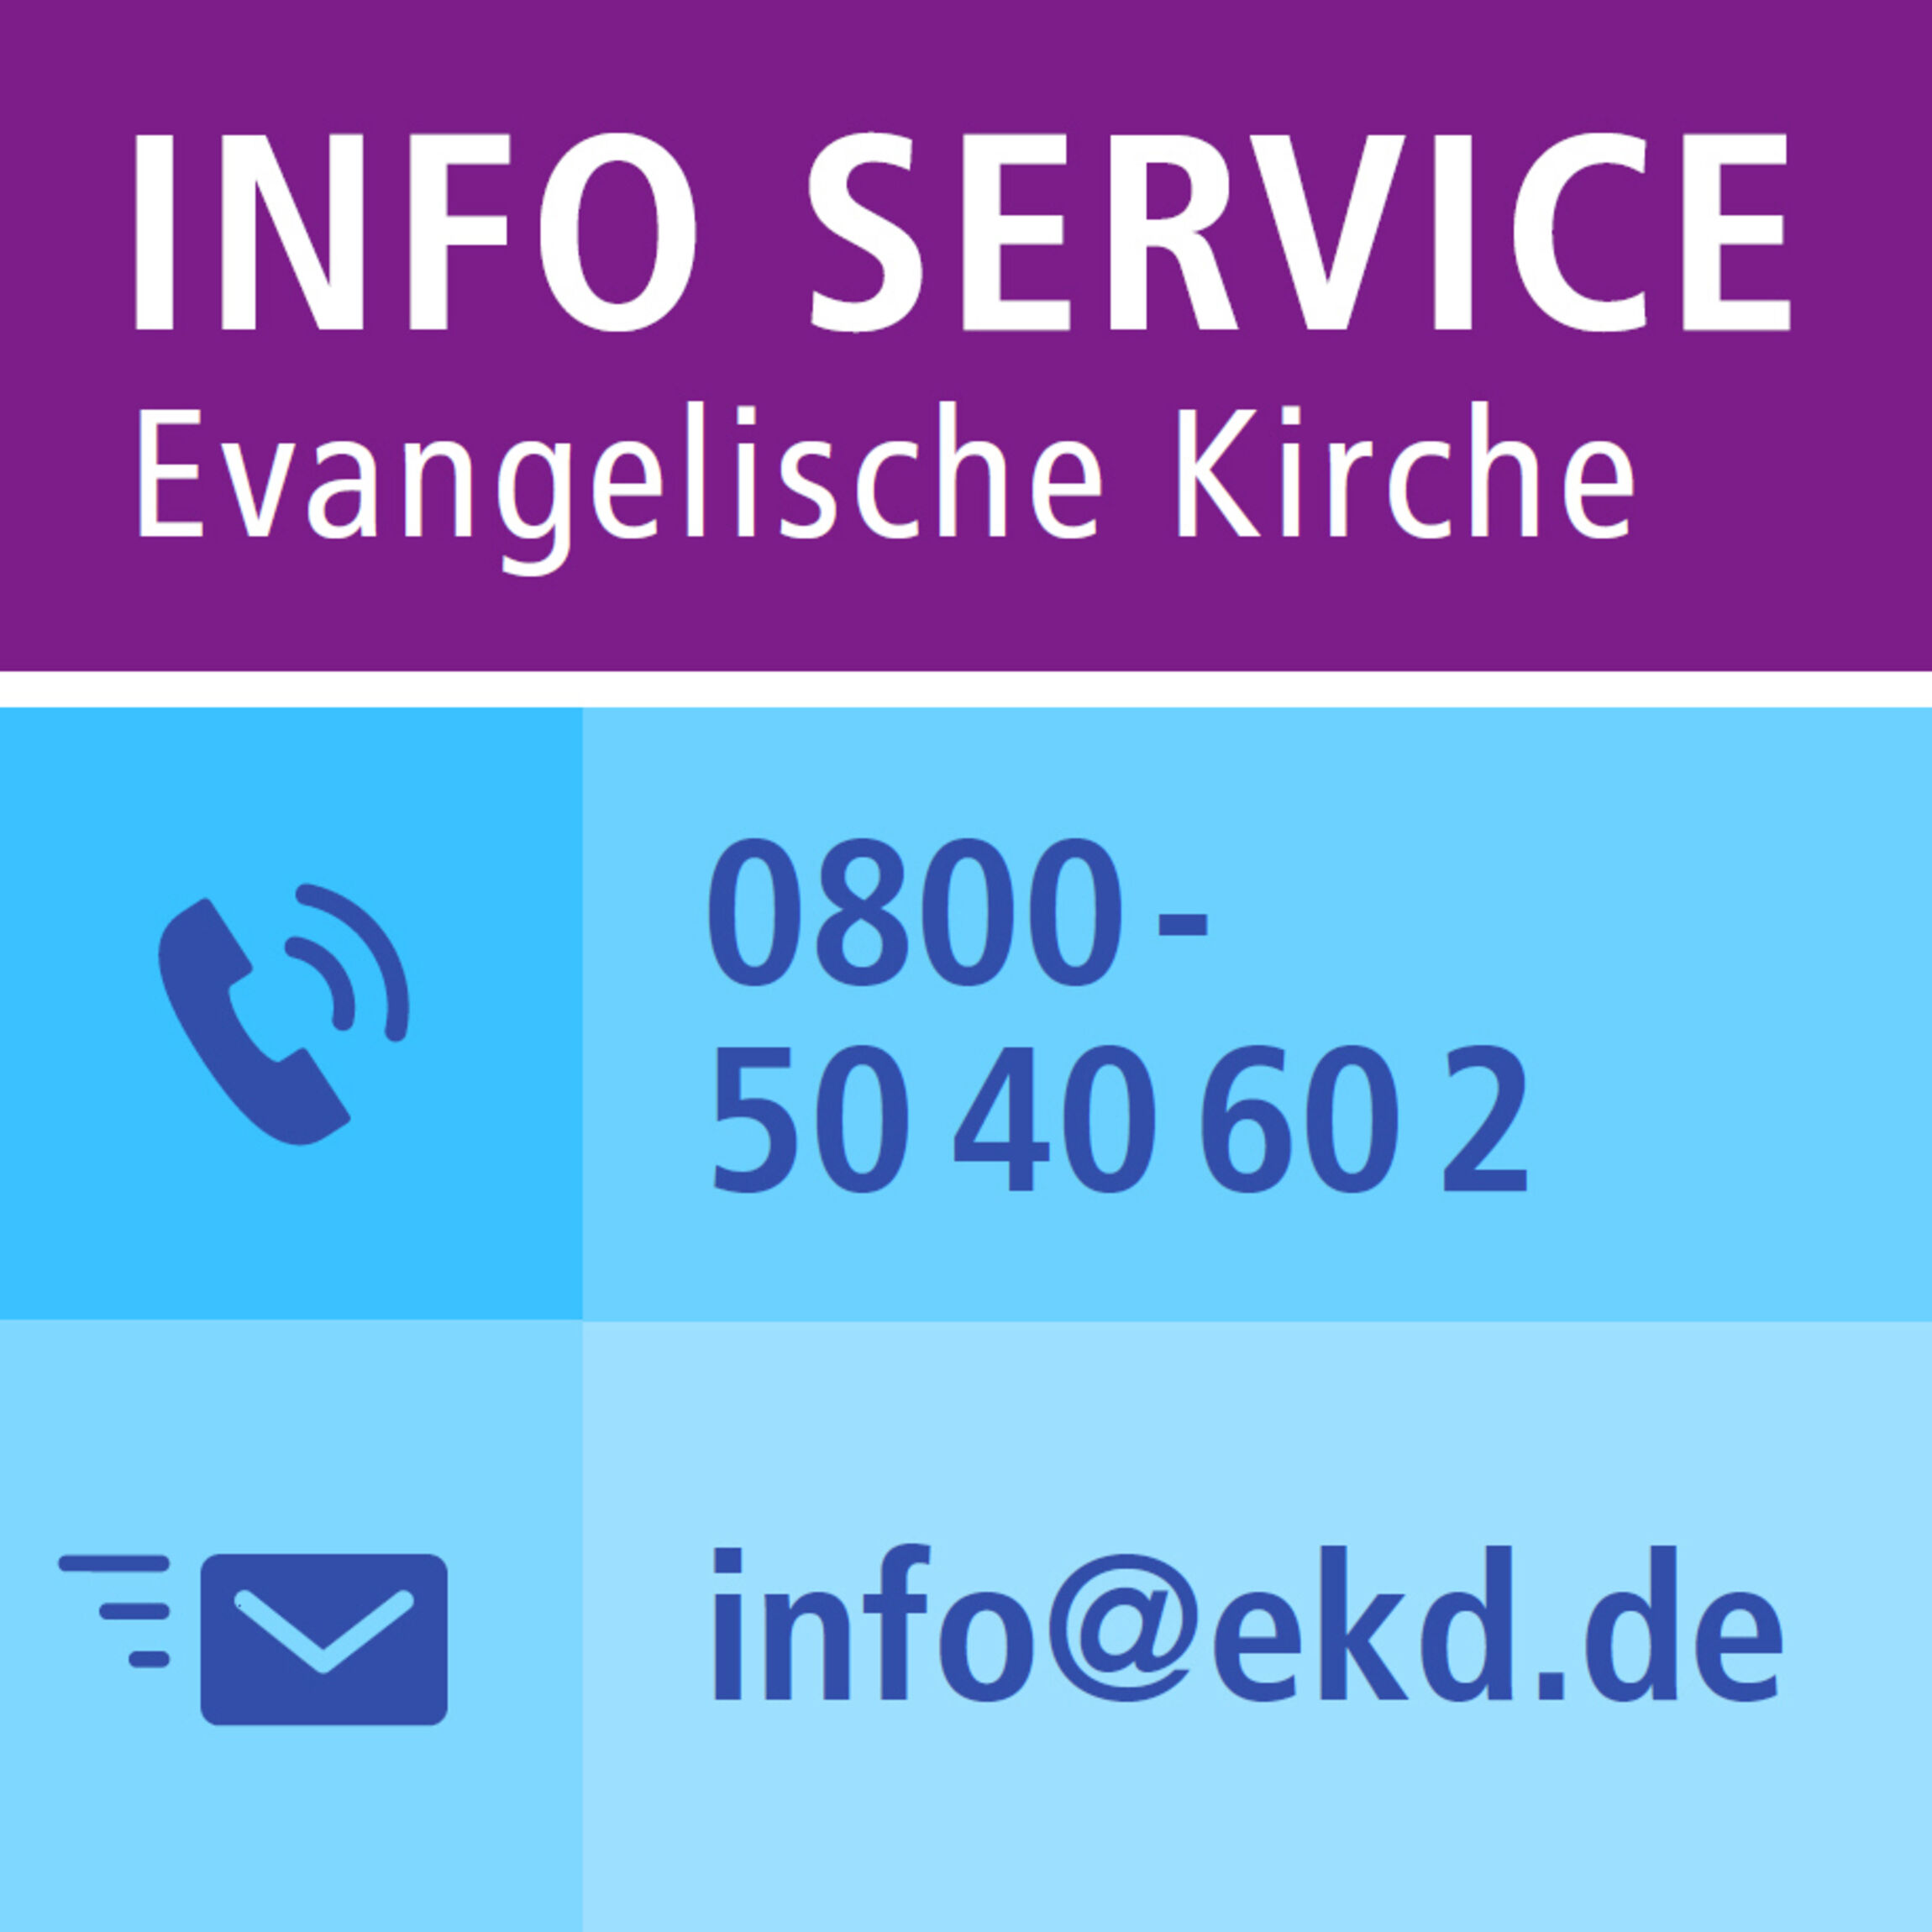 Telefonnummer und E-Mail-Adresse des Info-Service Evangelische Kirche